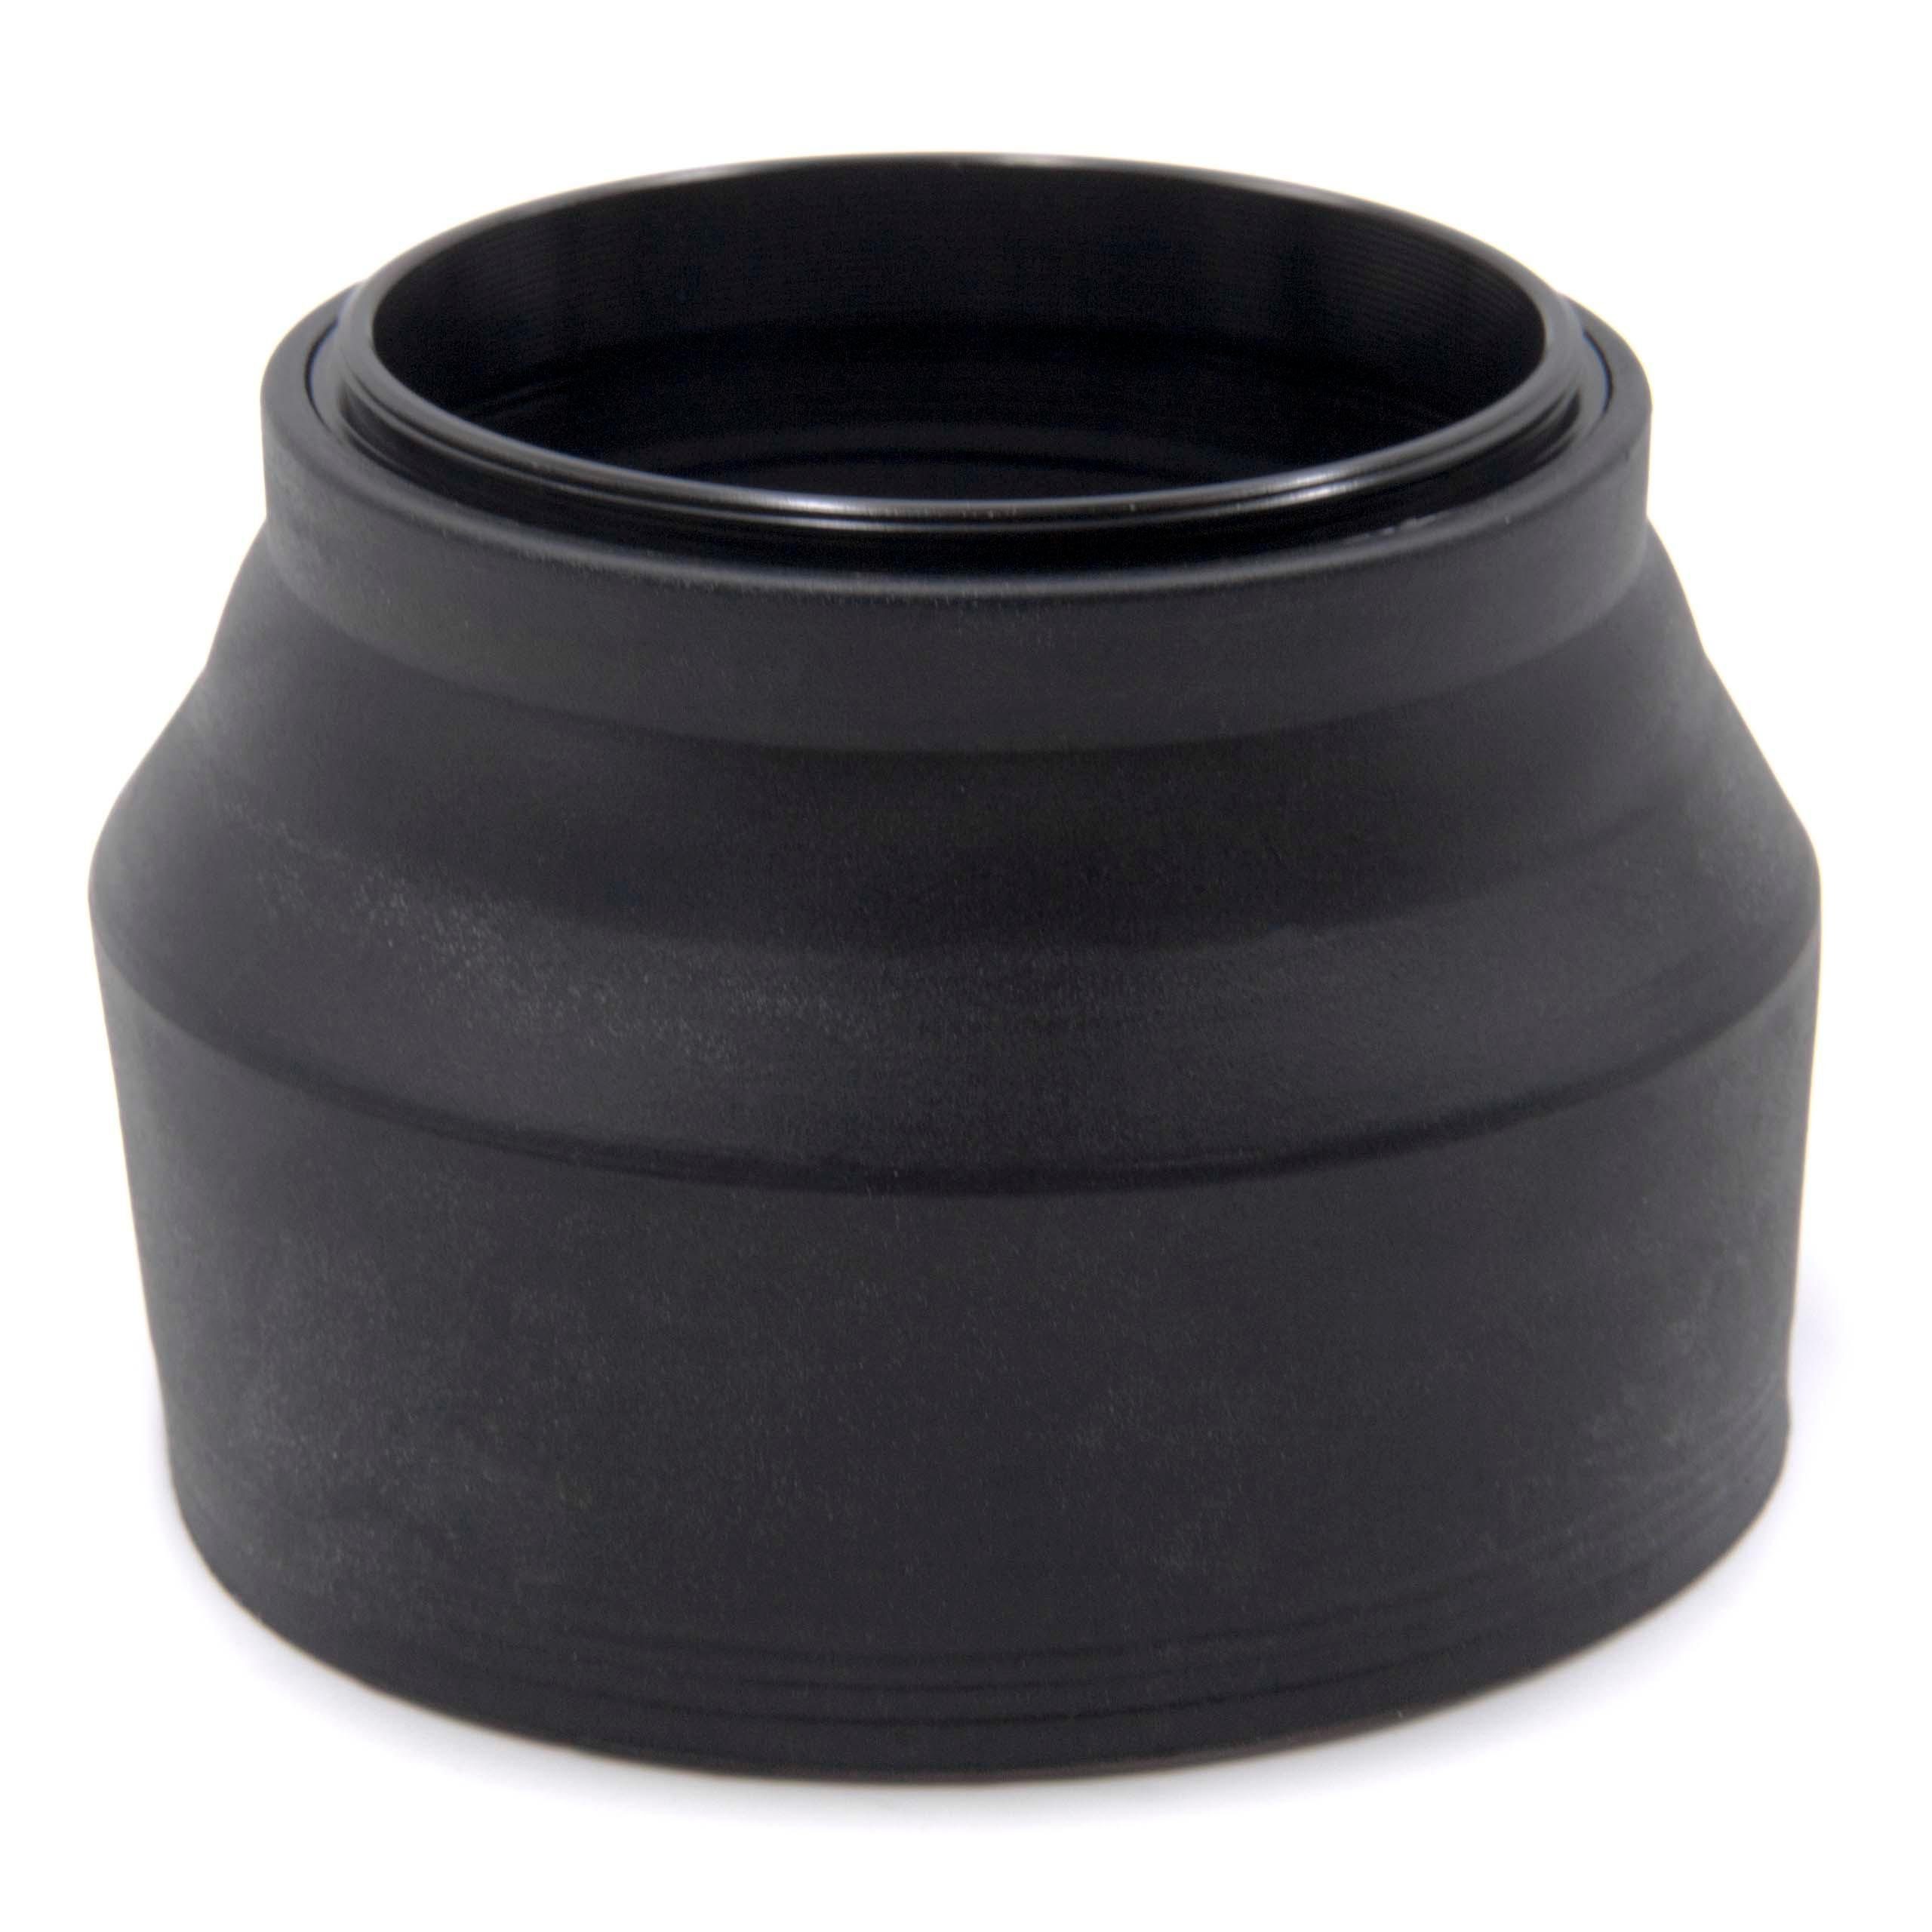 15 Gegenlichtblende Body Lens mm (EZ-M918), Olympus passend für mm 4.0-5.6 9-18 vhbw Cap ED